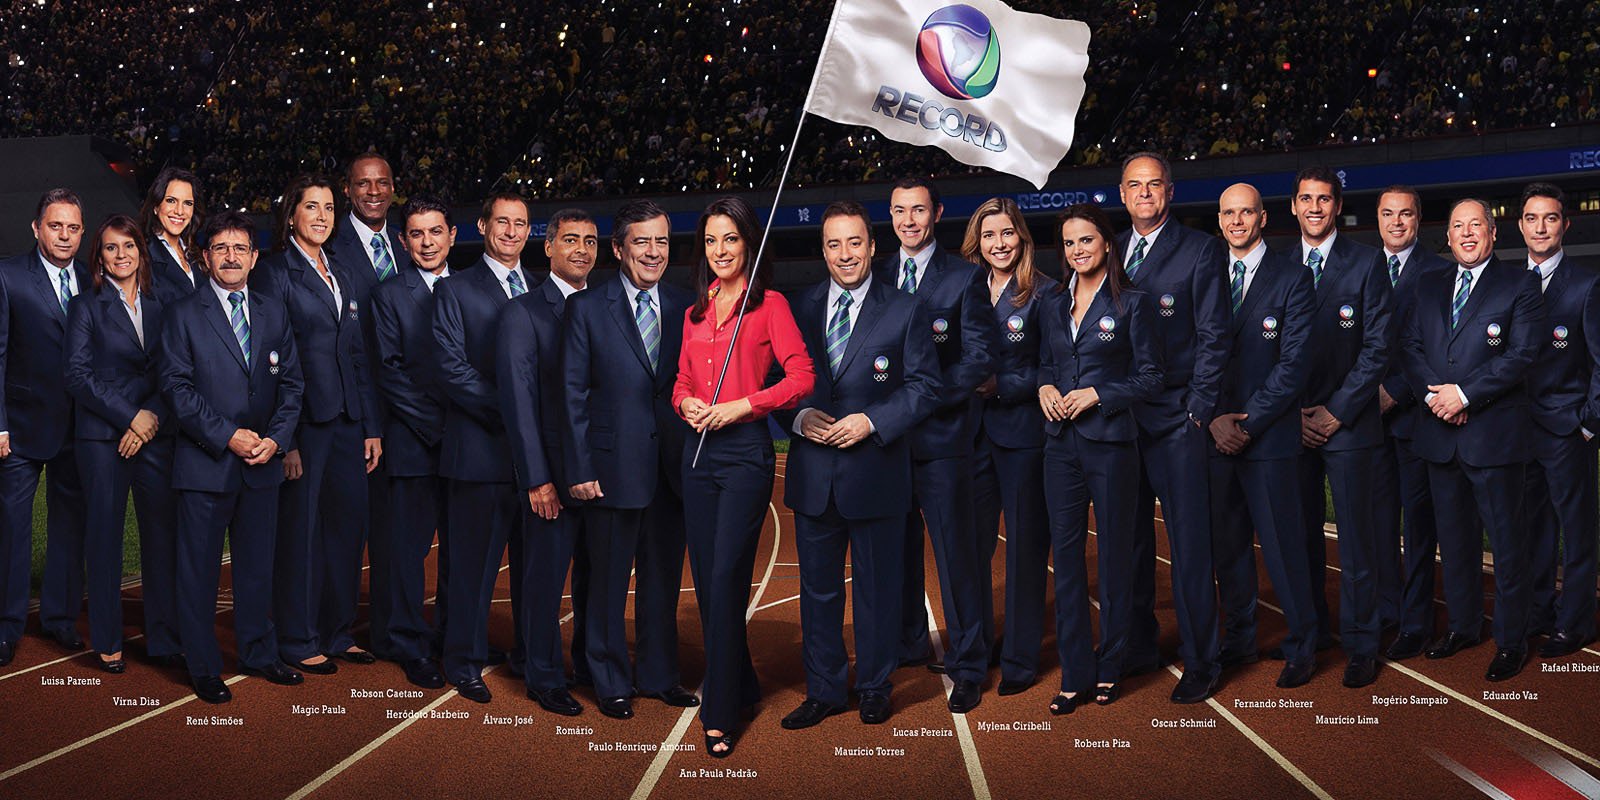 Featured image for “Jogos Olímpicos 2012 – Delegação”